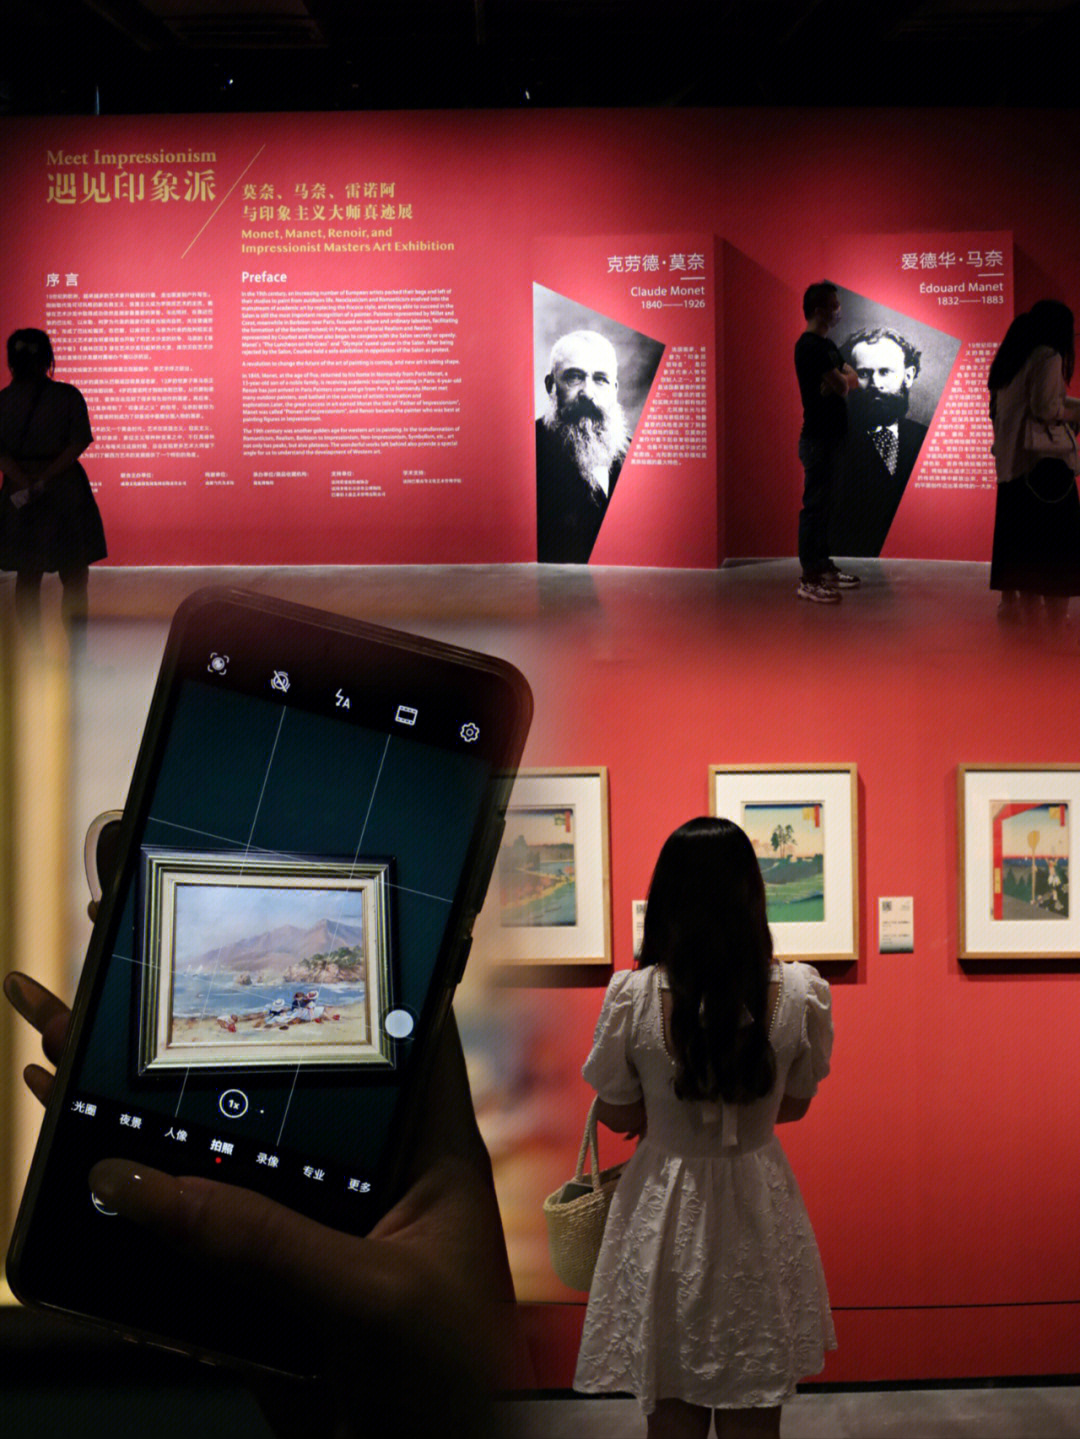 江户 浮世绘原版珍藏展99展览地址:遇见博物馆·成都馆74展览时间